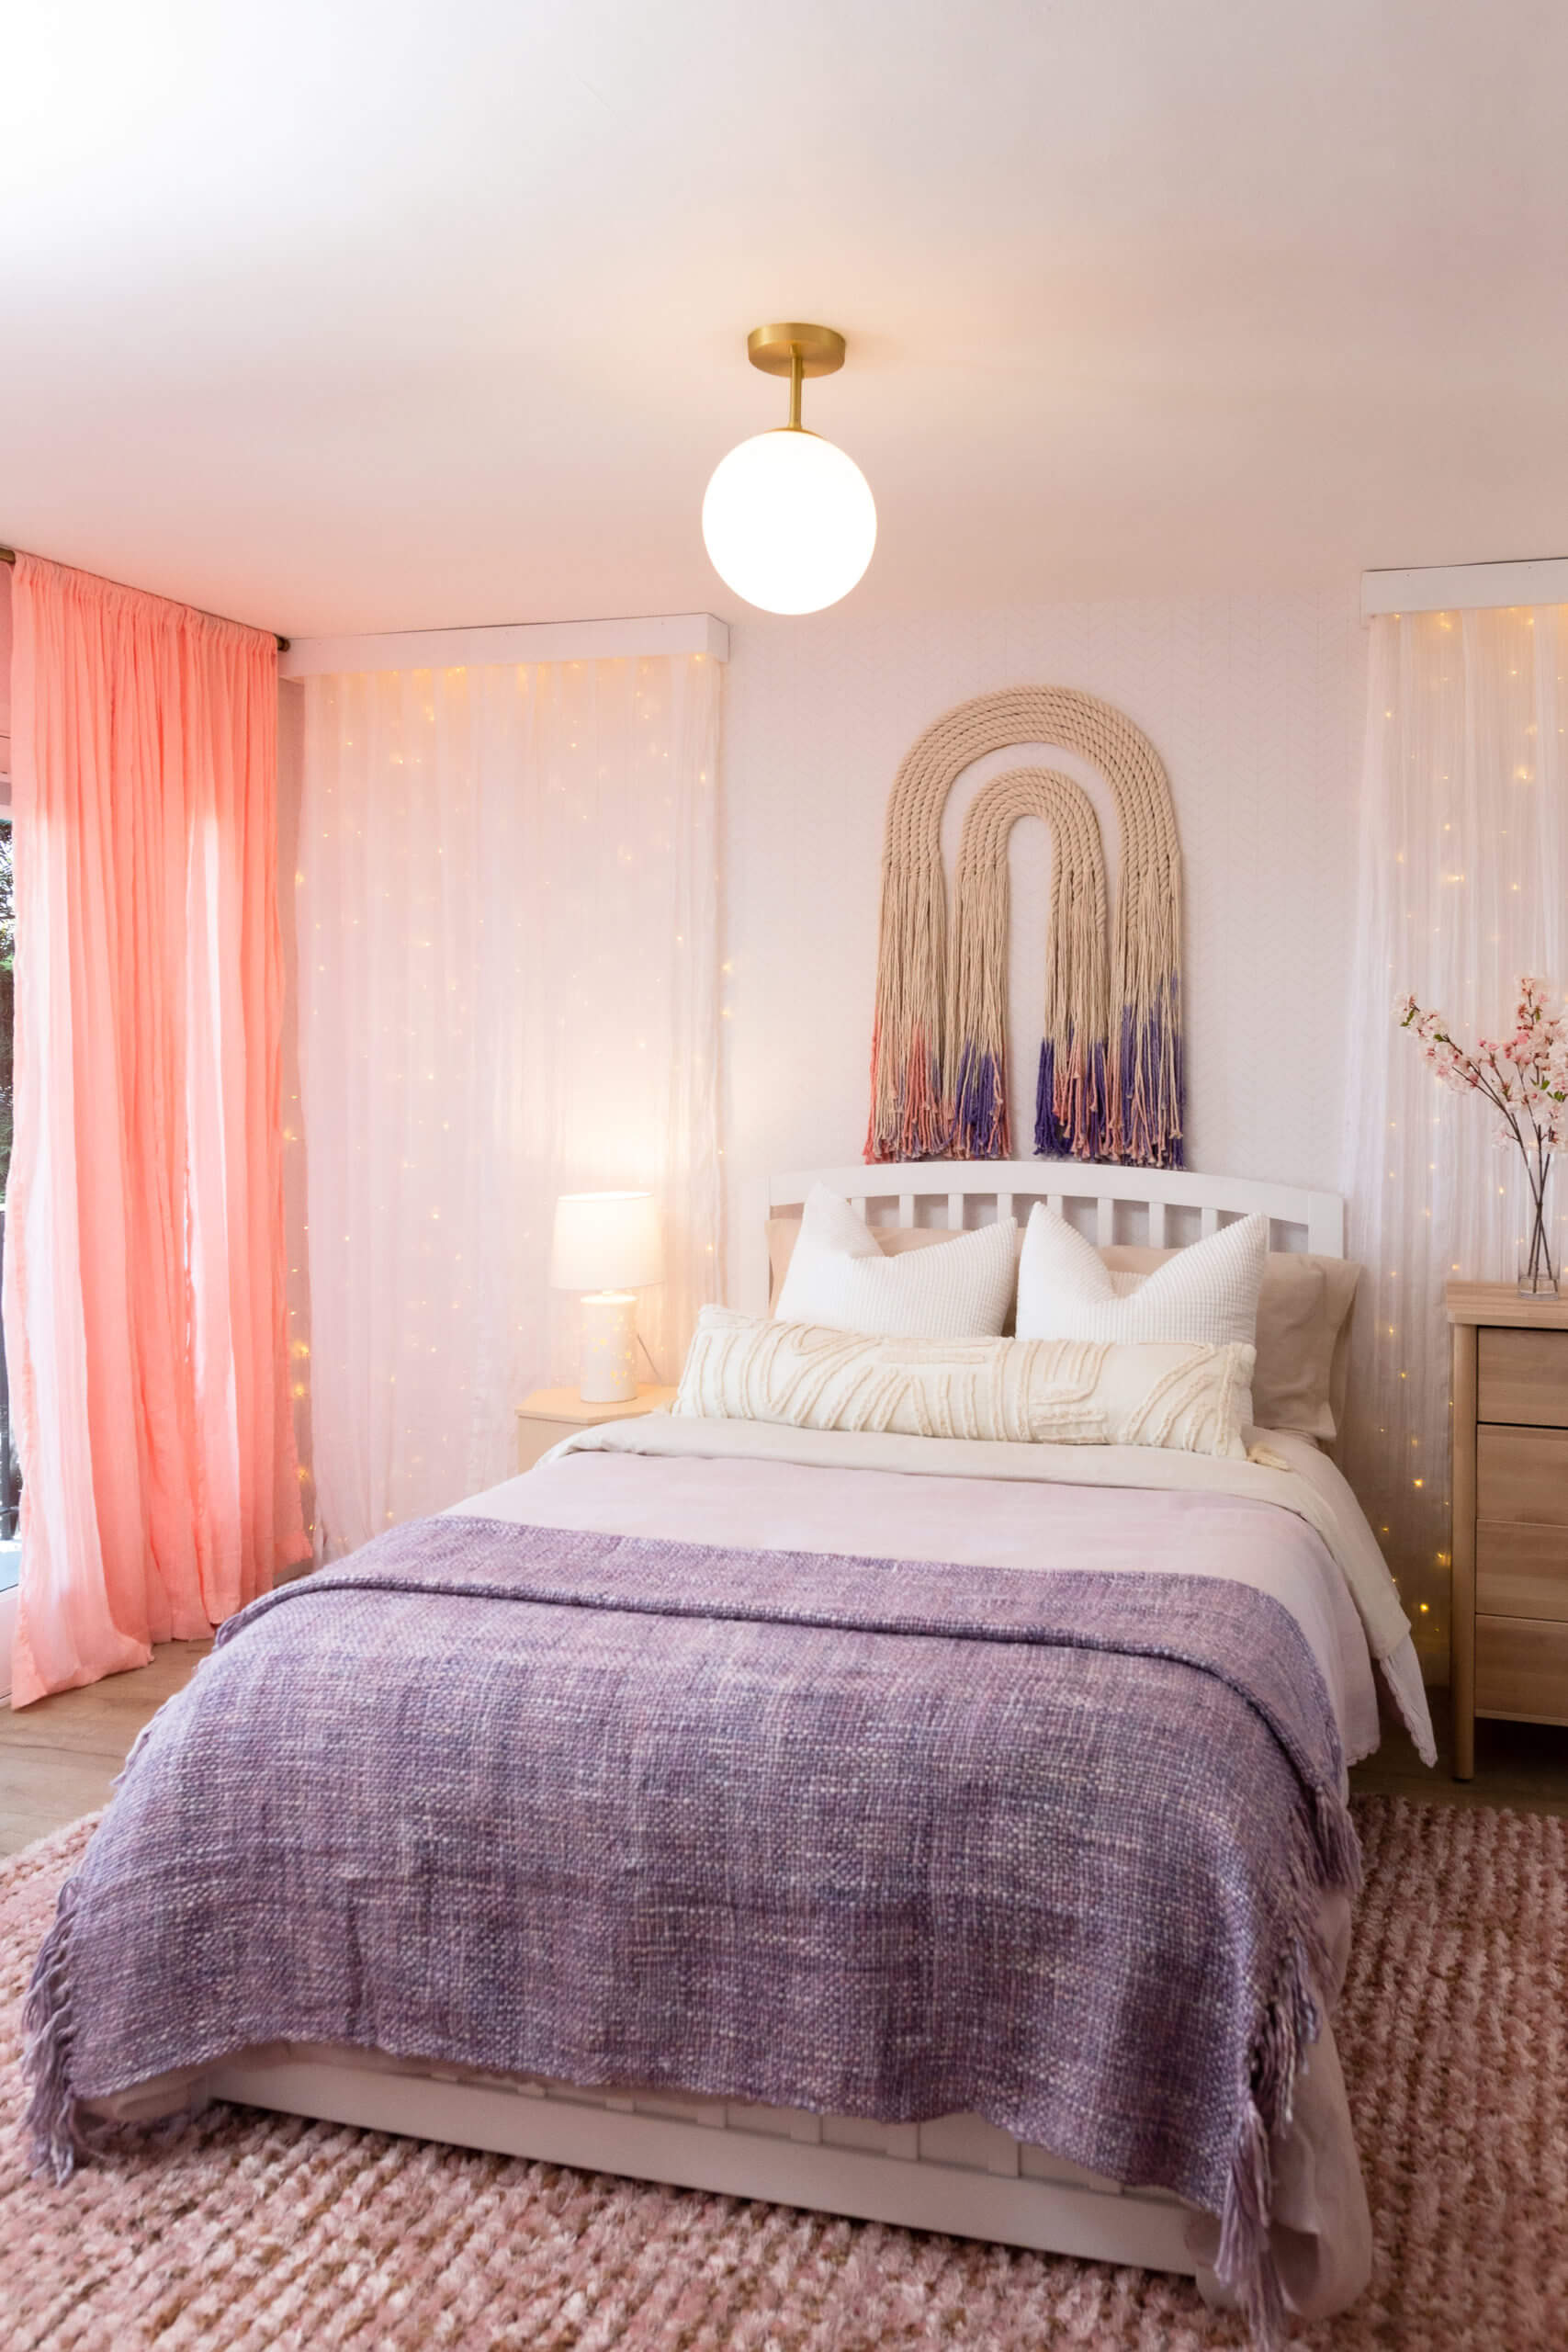 Trang trí phòng ngủ màu tím hồng đẹp